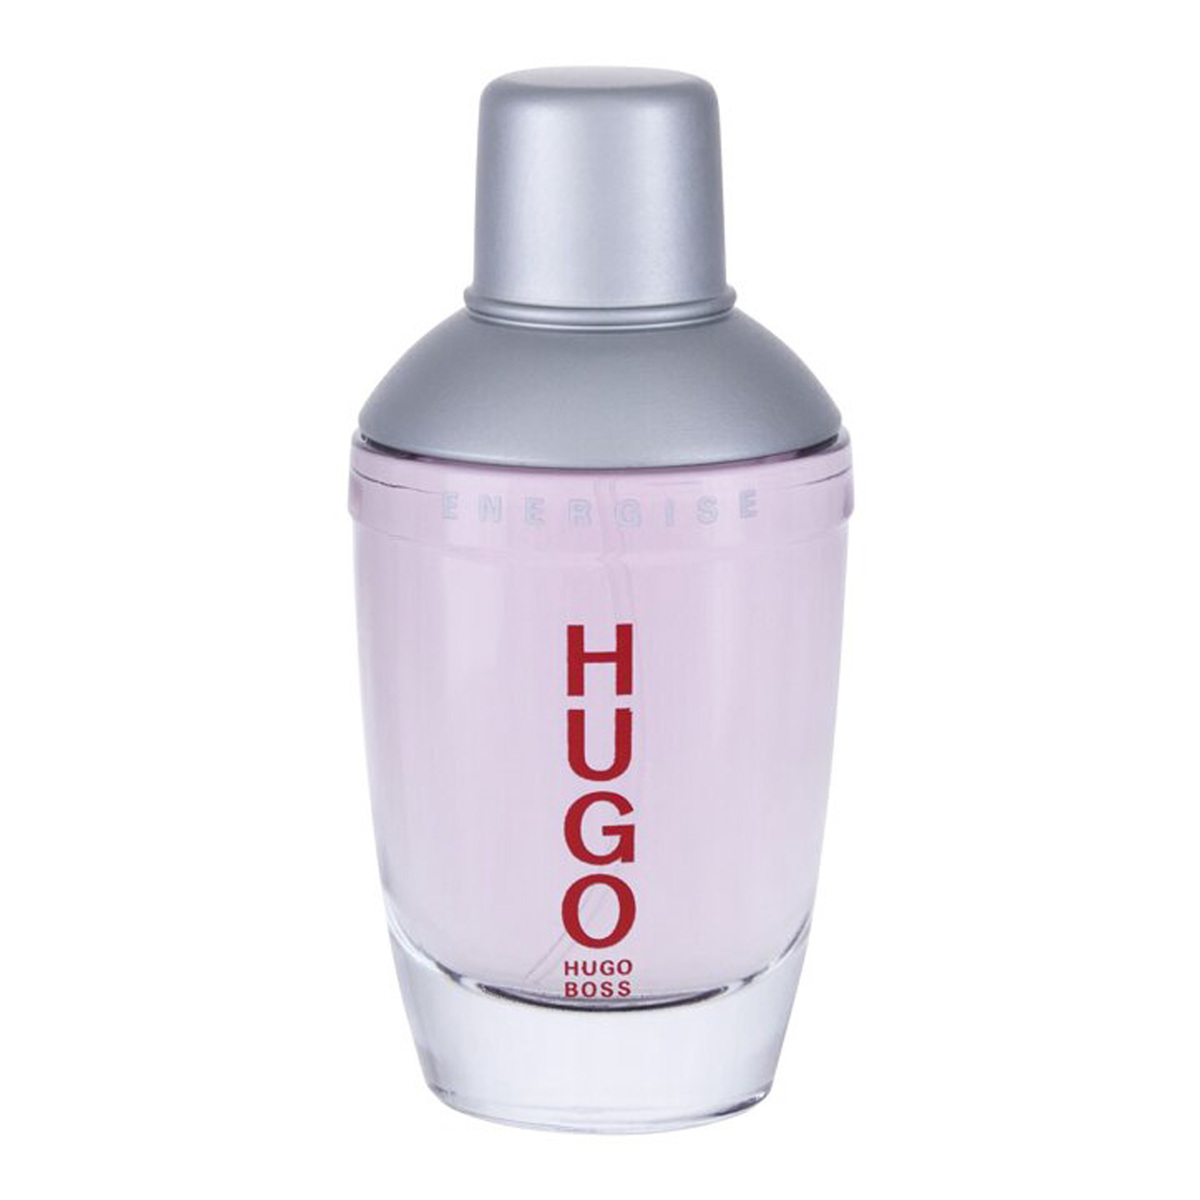 Hugo Boss Energise EDT, 75 ml